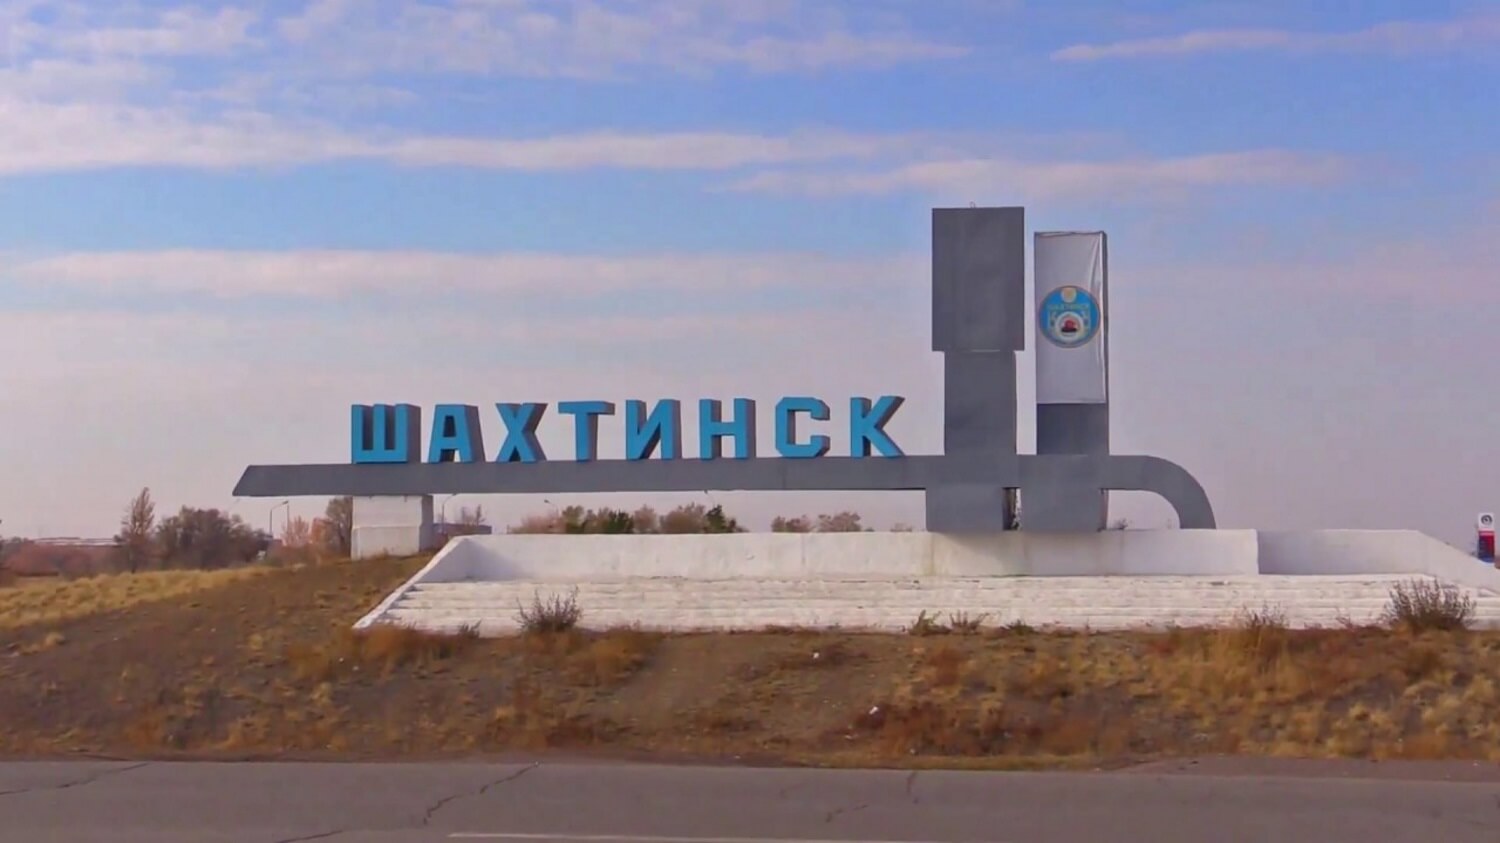 Шахтинск: аулаларды абаттандыру, мектептер мен жолдарды жөндеу